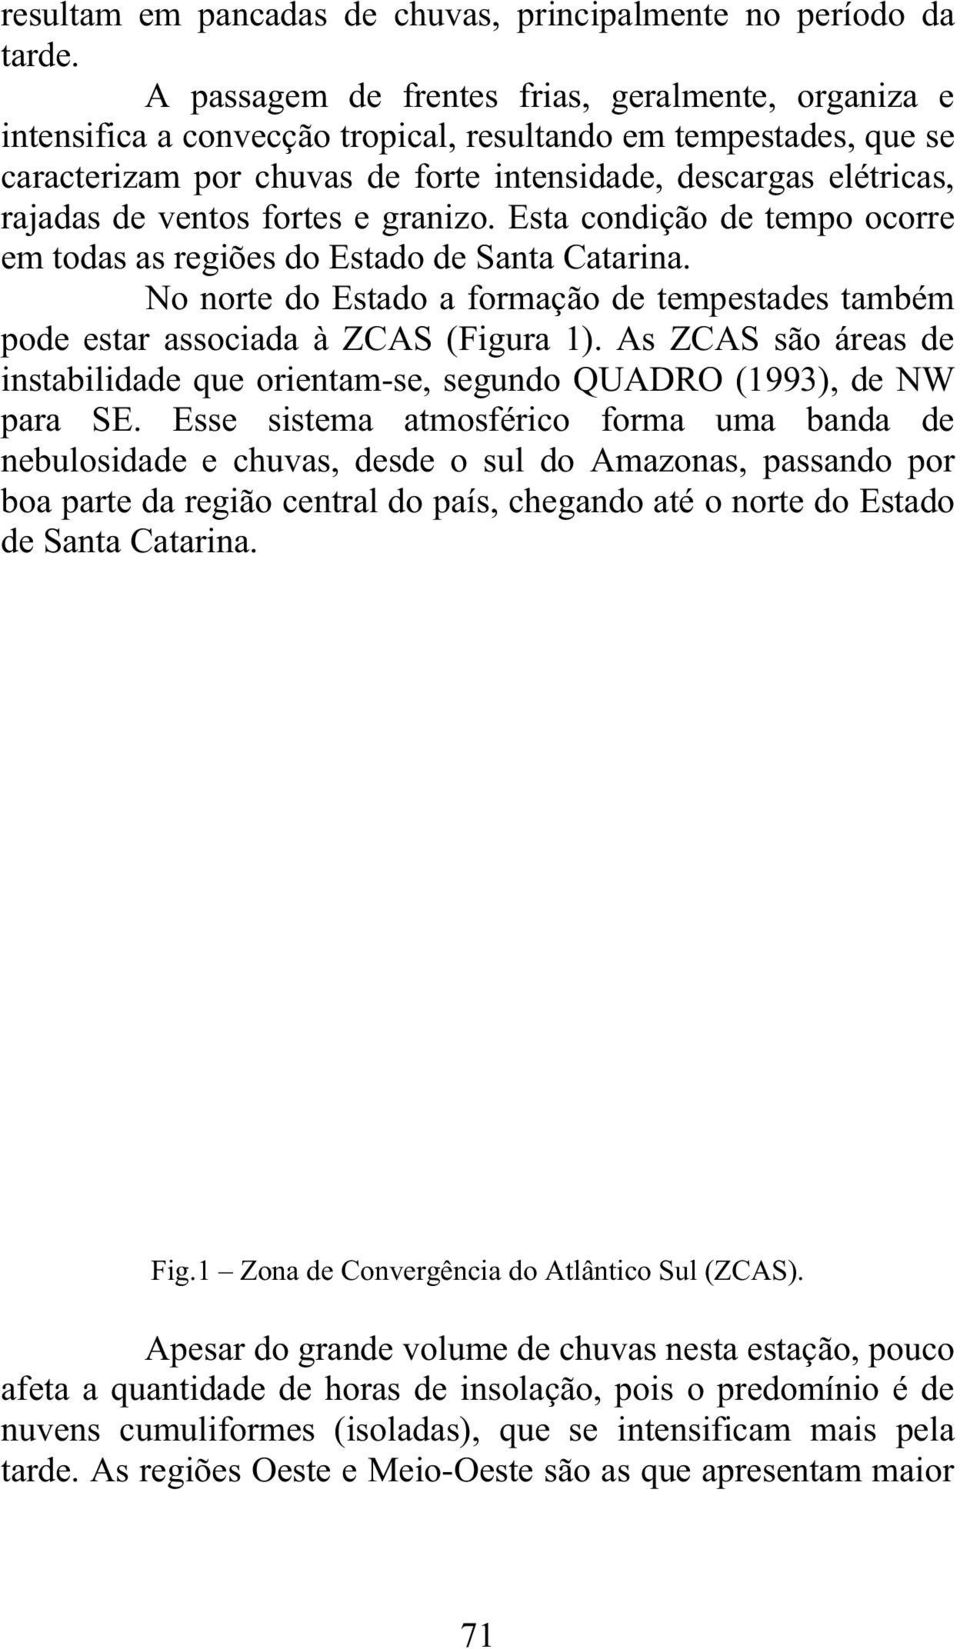 ventos fortes e granizo. Esta condição de tempo ocorre em todas as regiões do Estado de Santa Catarina. No norte do Estado a formação de tempestades também pode estar associada à ZCAS (Figura 1).